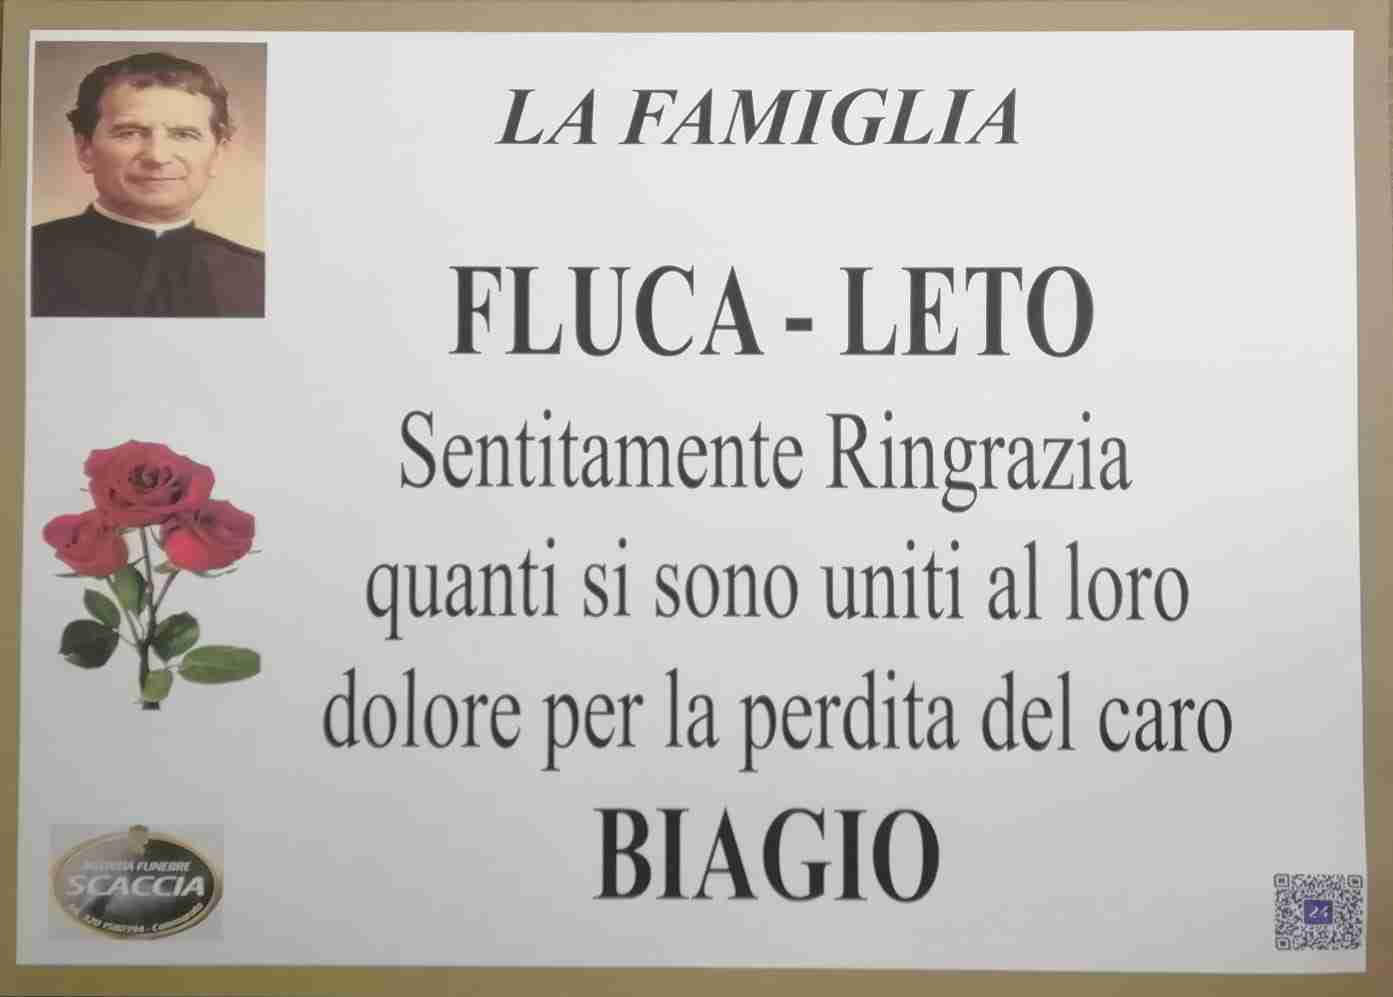 Biagio Fluca